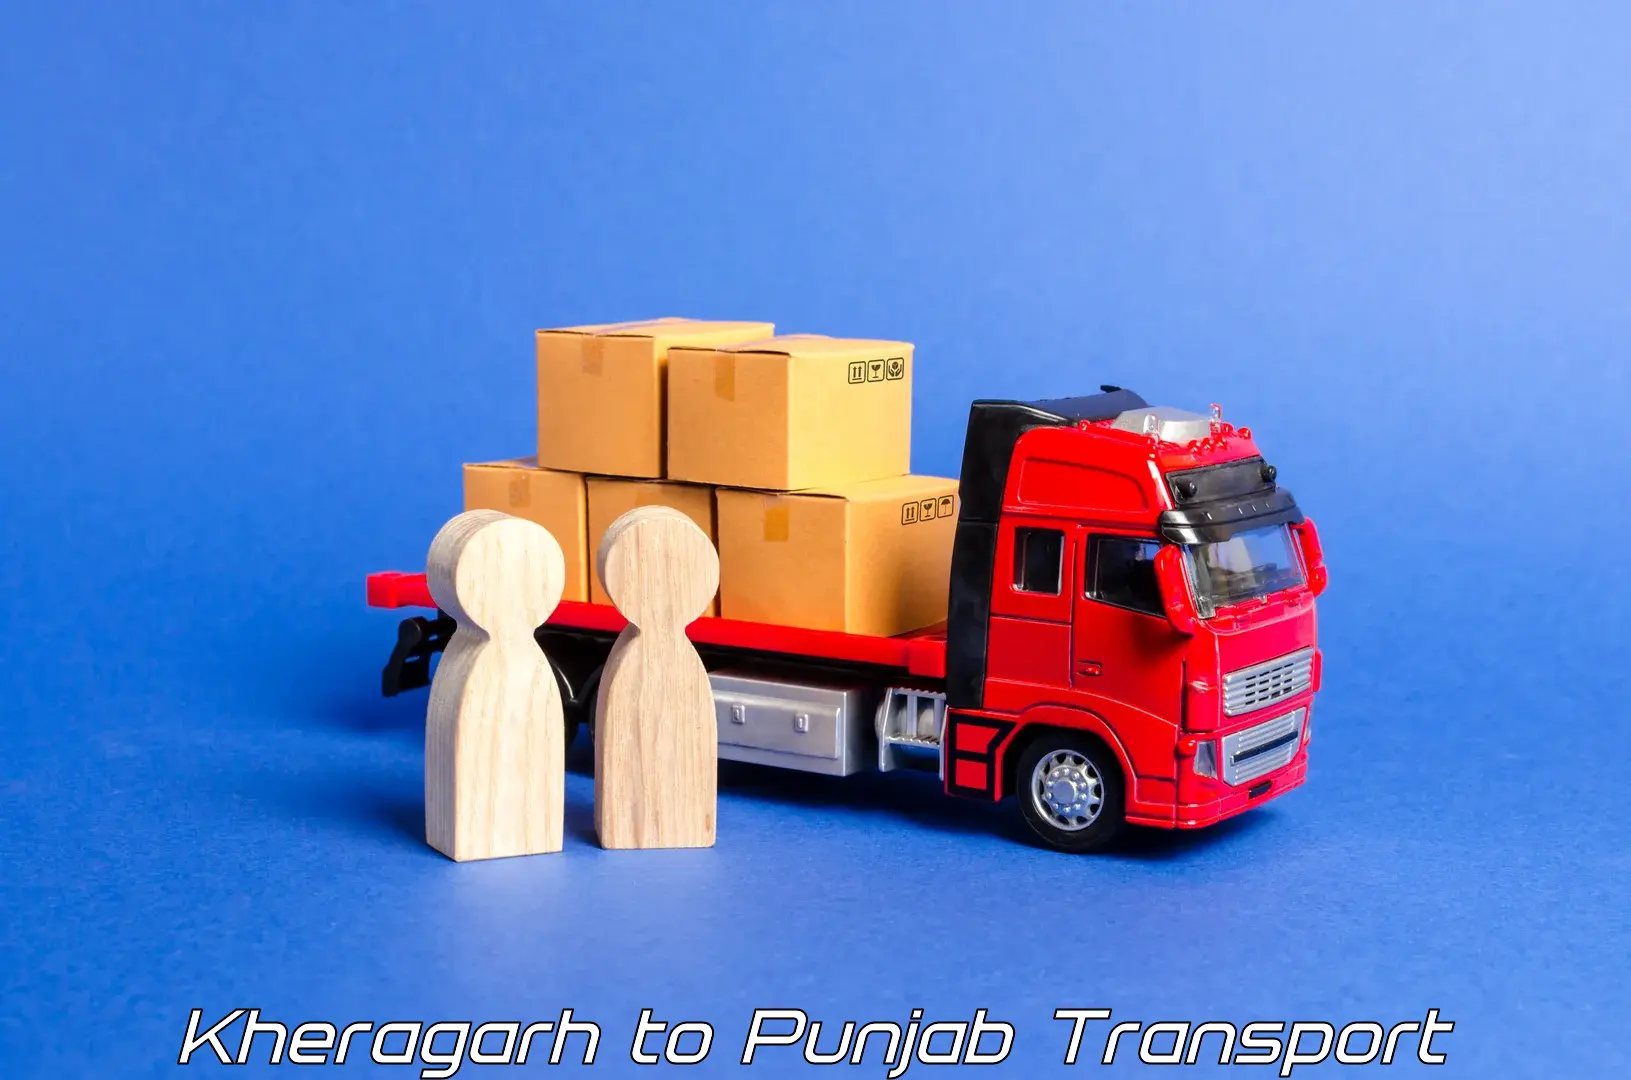 Transportation solution services Kheragarh to Dinanagar